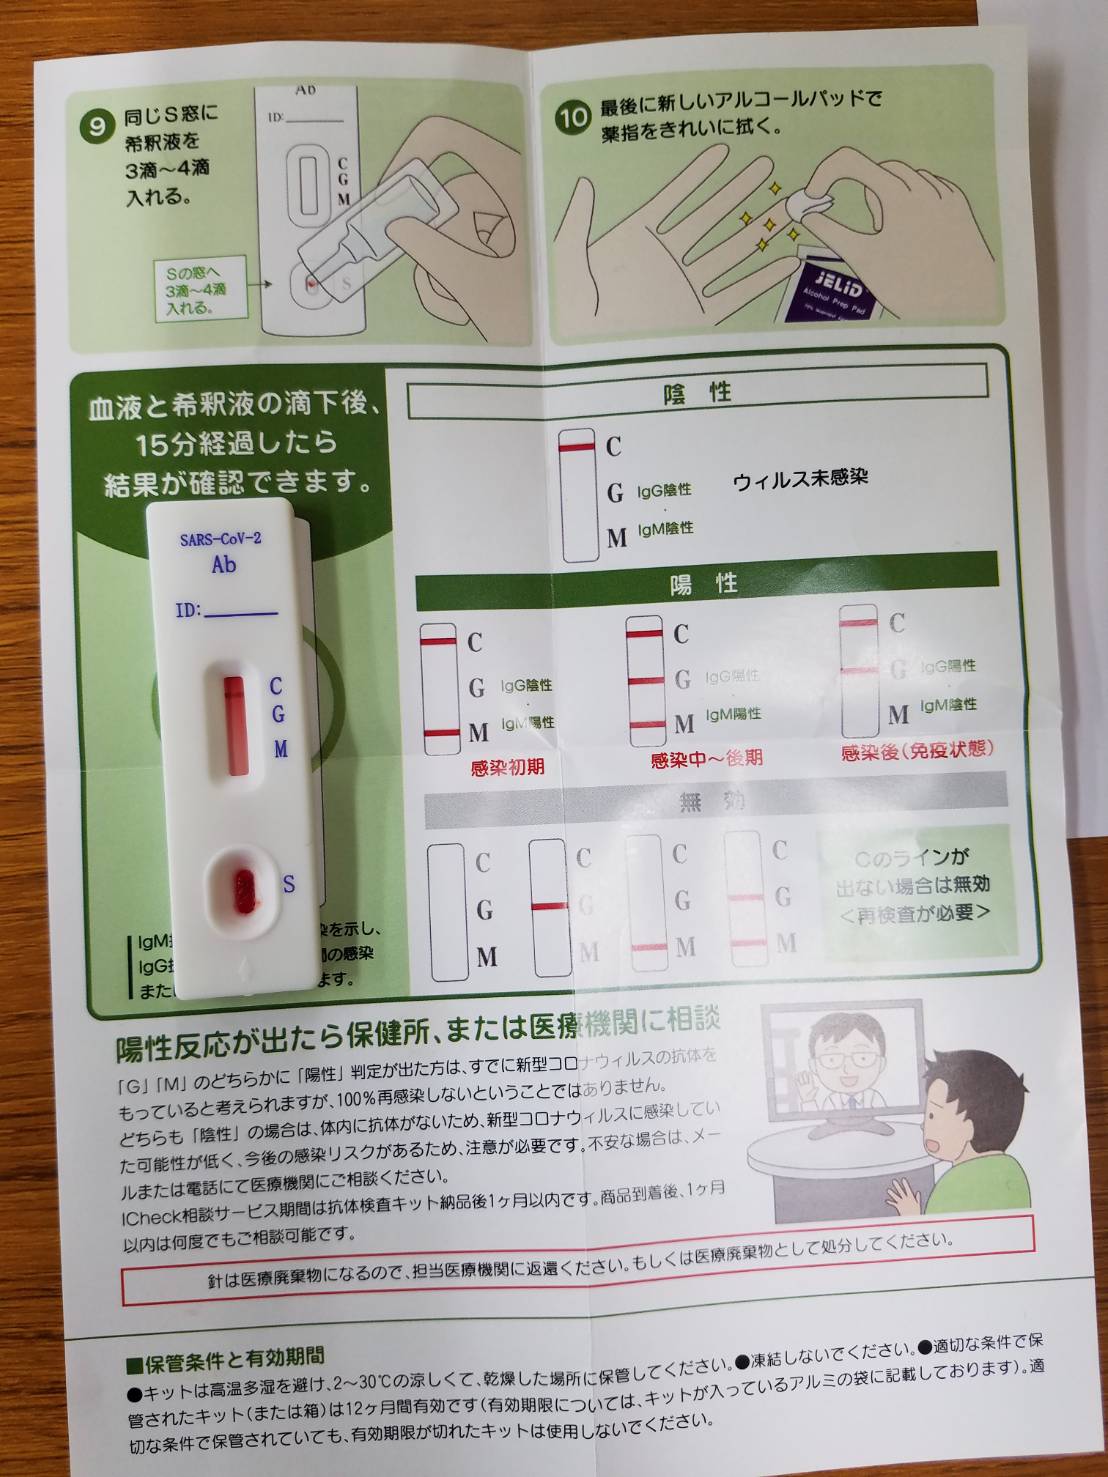 新型コロナウイルス抗体検査実施について Aizawa Corporation 中古車販売事業 保険代理店事業